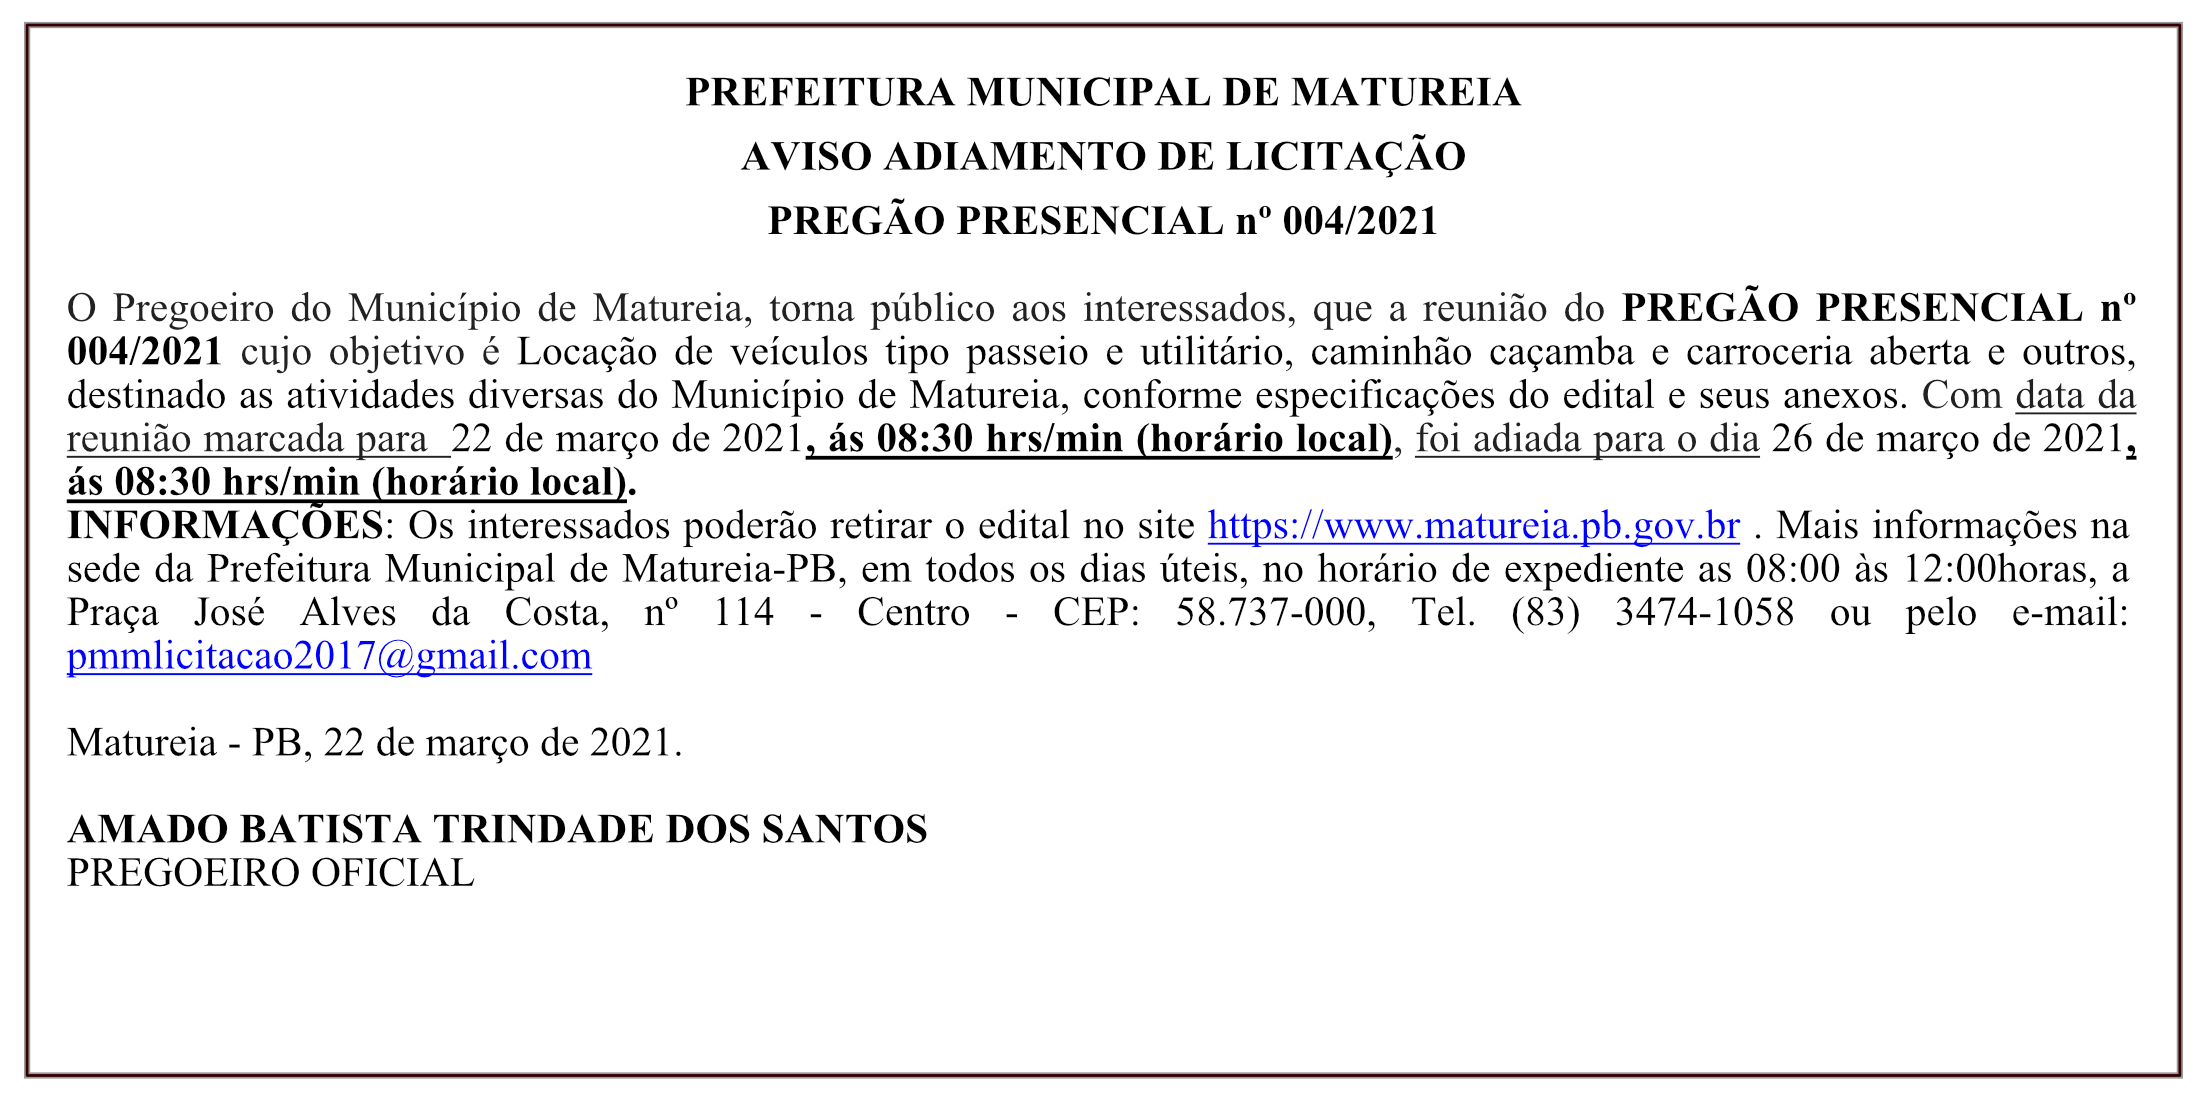 PREFEITURA MUNICIPAL DE MATUREIA – AVISO ADIAMENTO DE LICITAÇÃO – PREGÃO PRESENCIAL Nº 004/2021